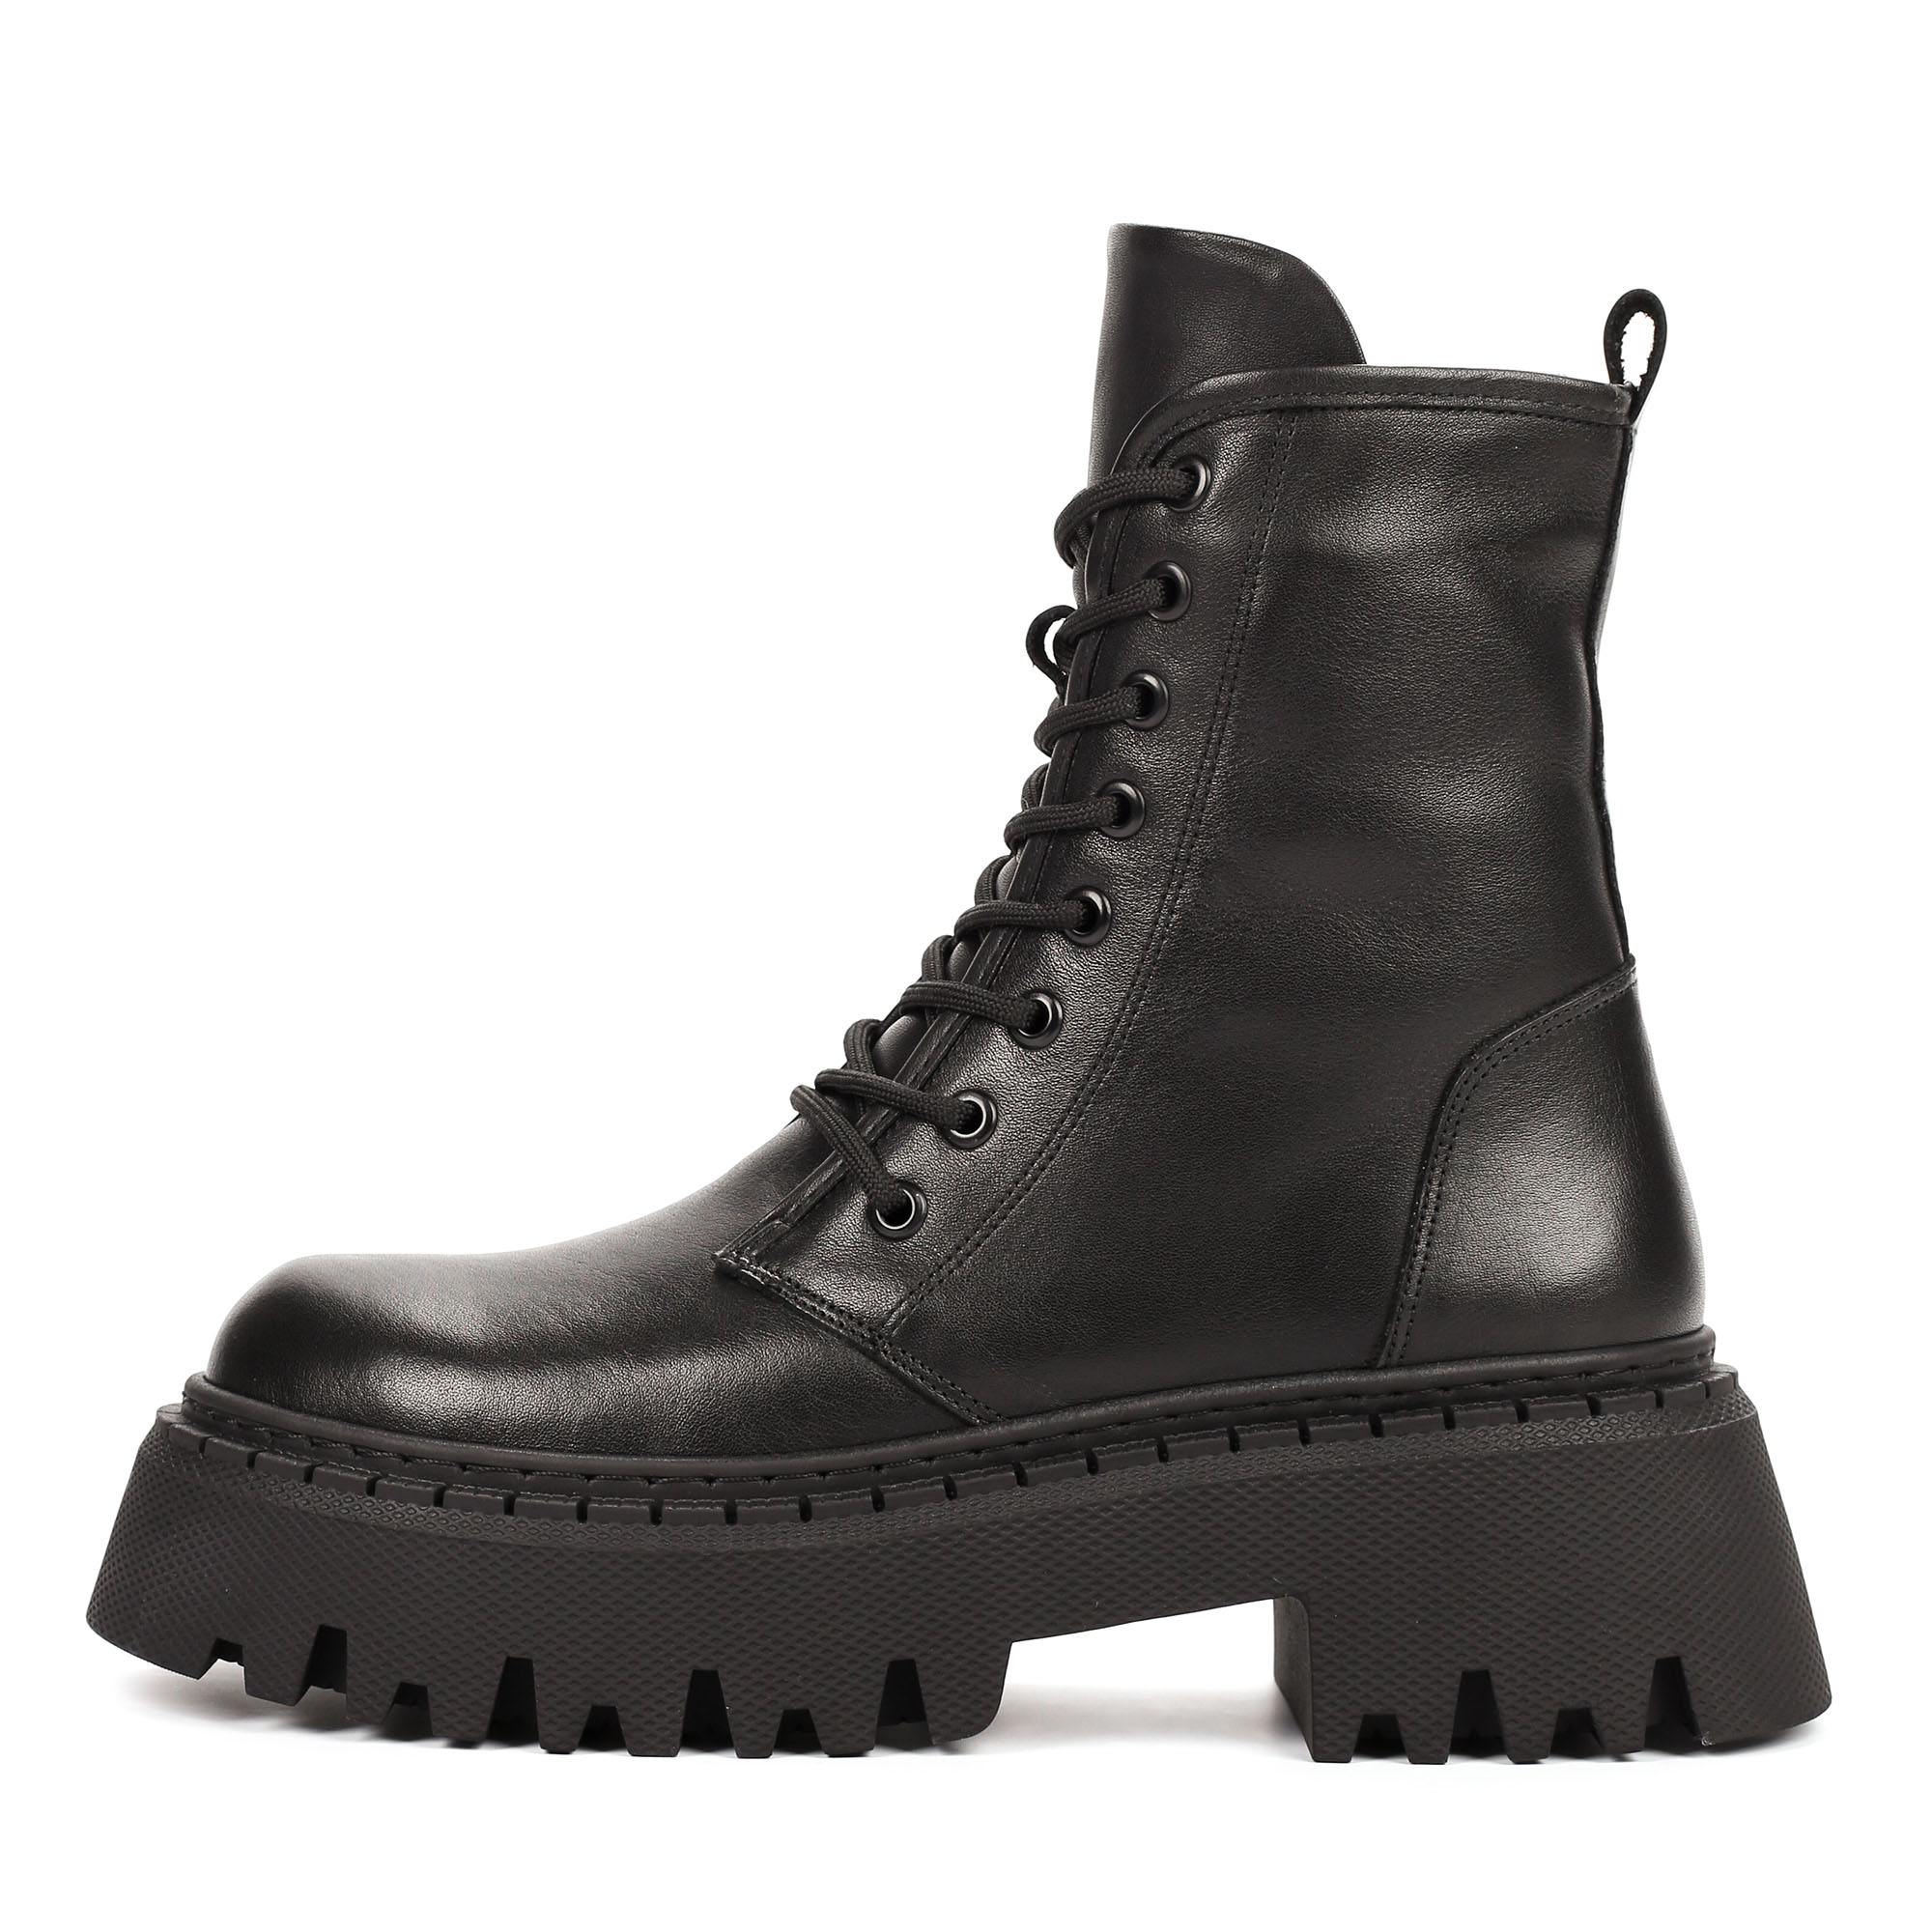 Ботинки Thomas Munz 506-156B-2102, цвет черный, размер 36